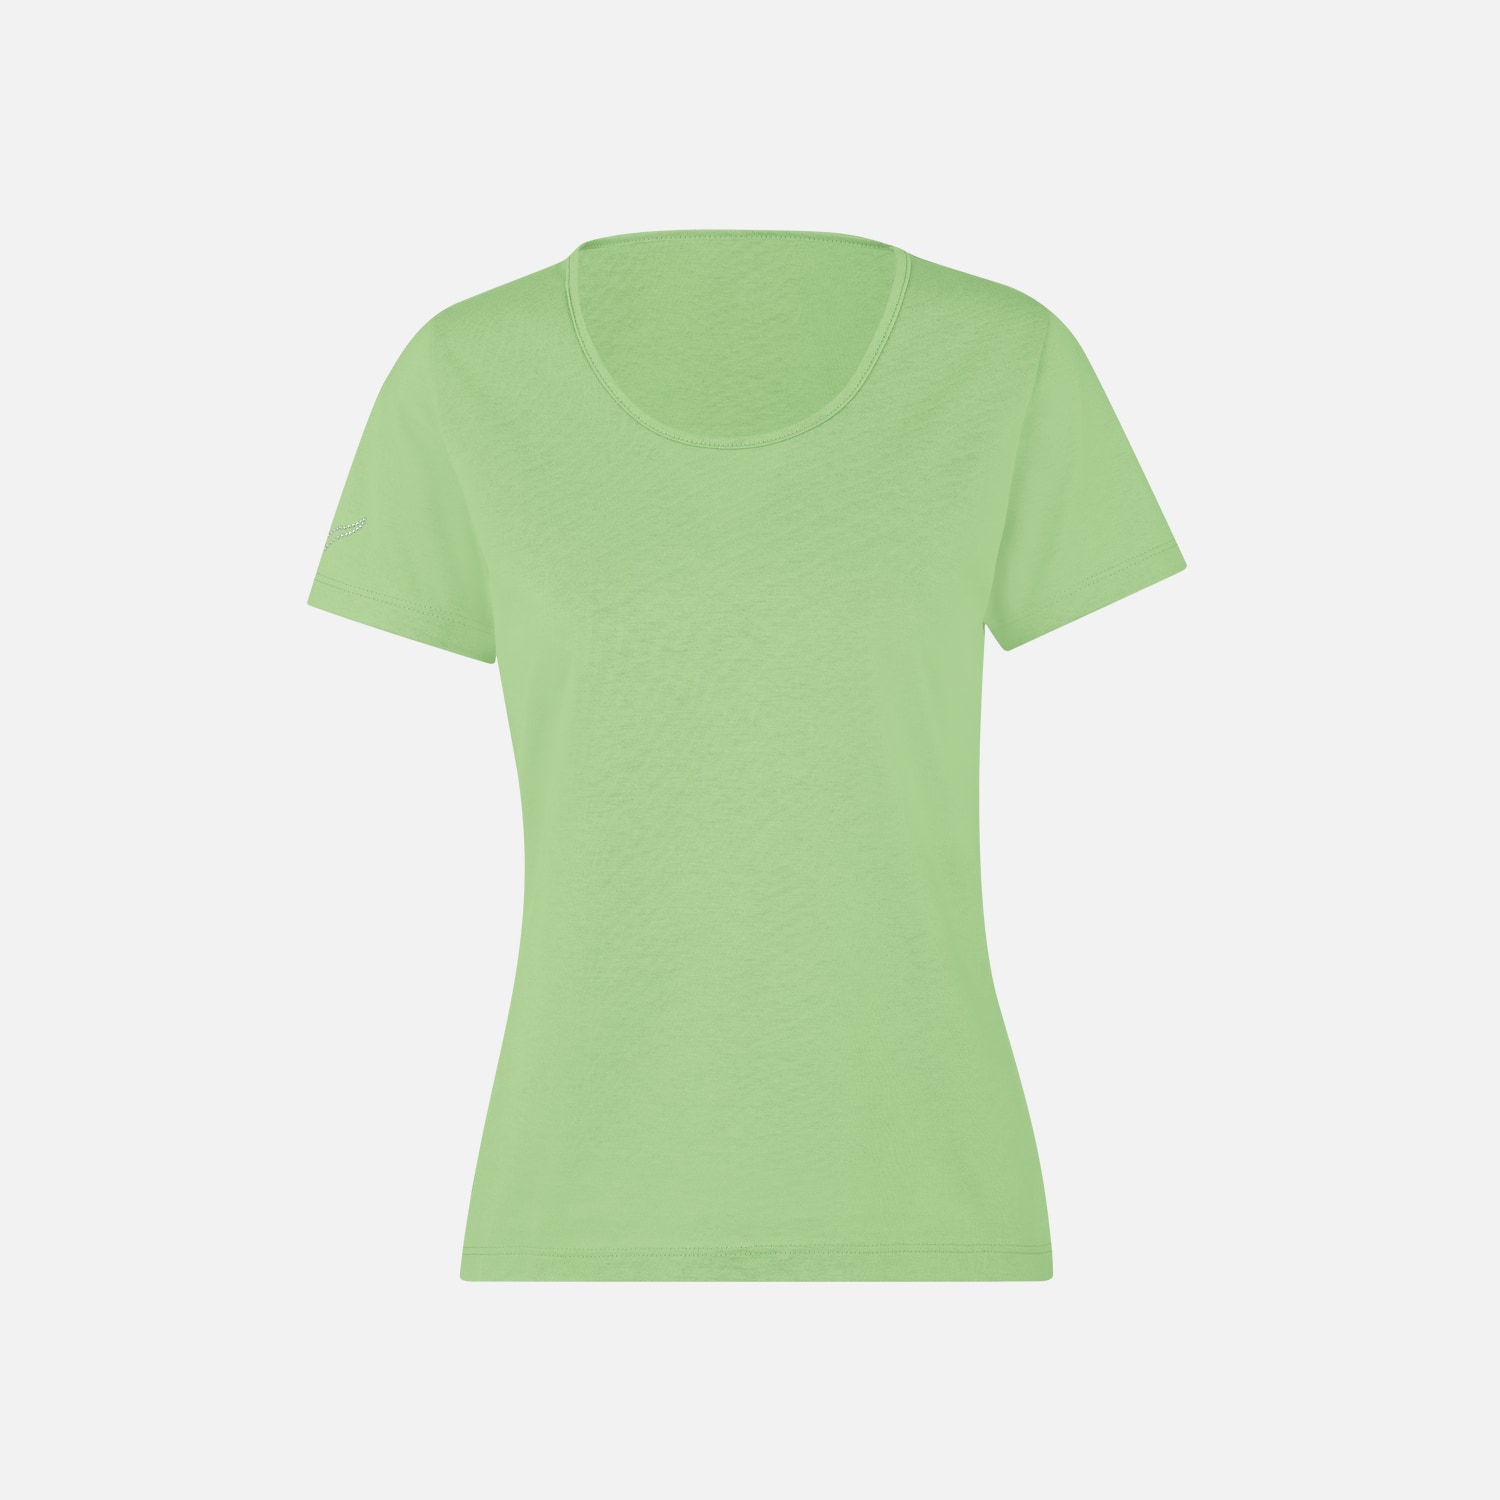 T-Shirt Swarovski – AreTex – Mode für Menschen mit Handicap